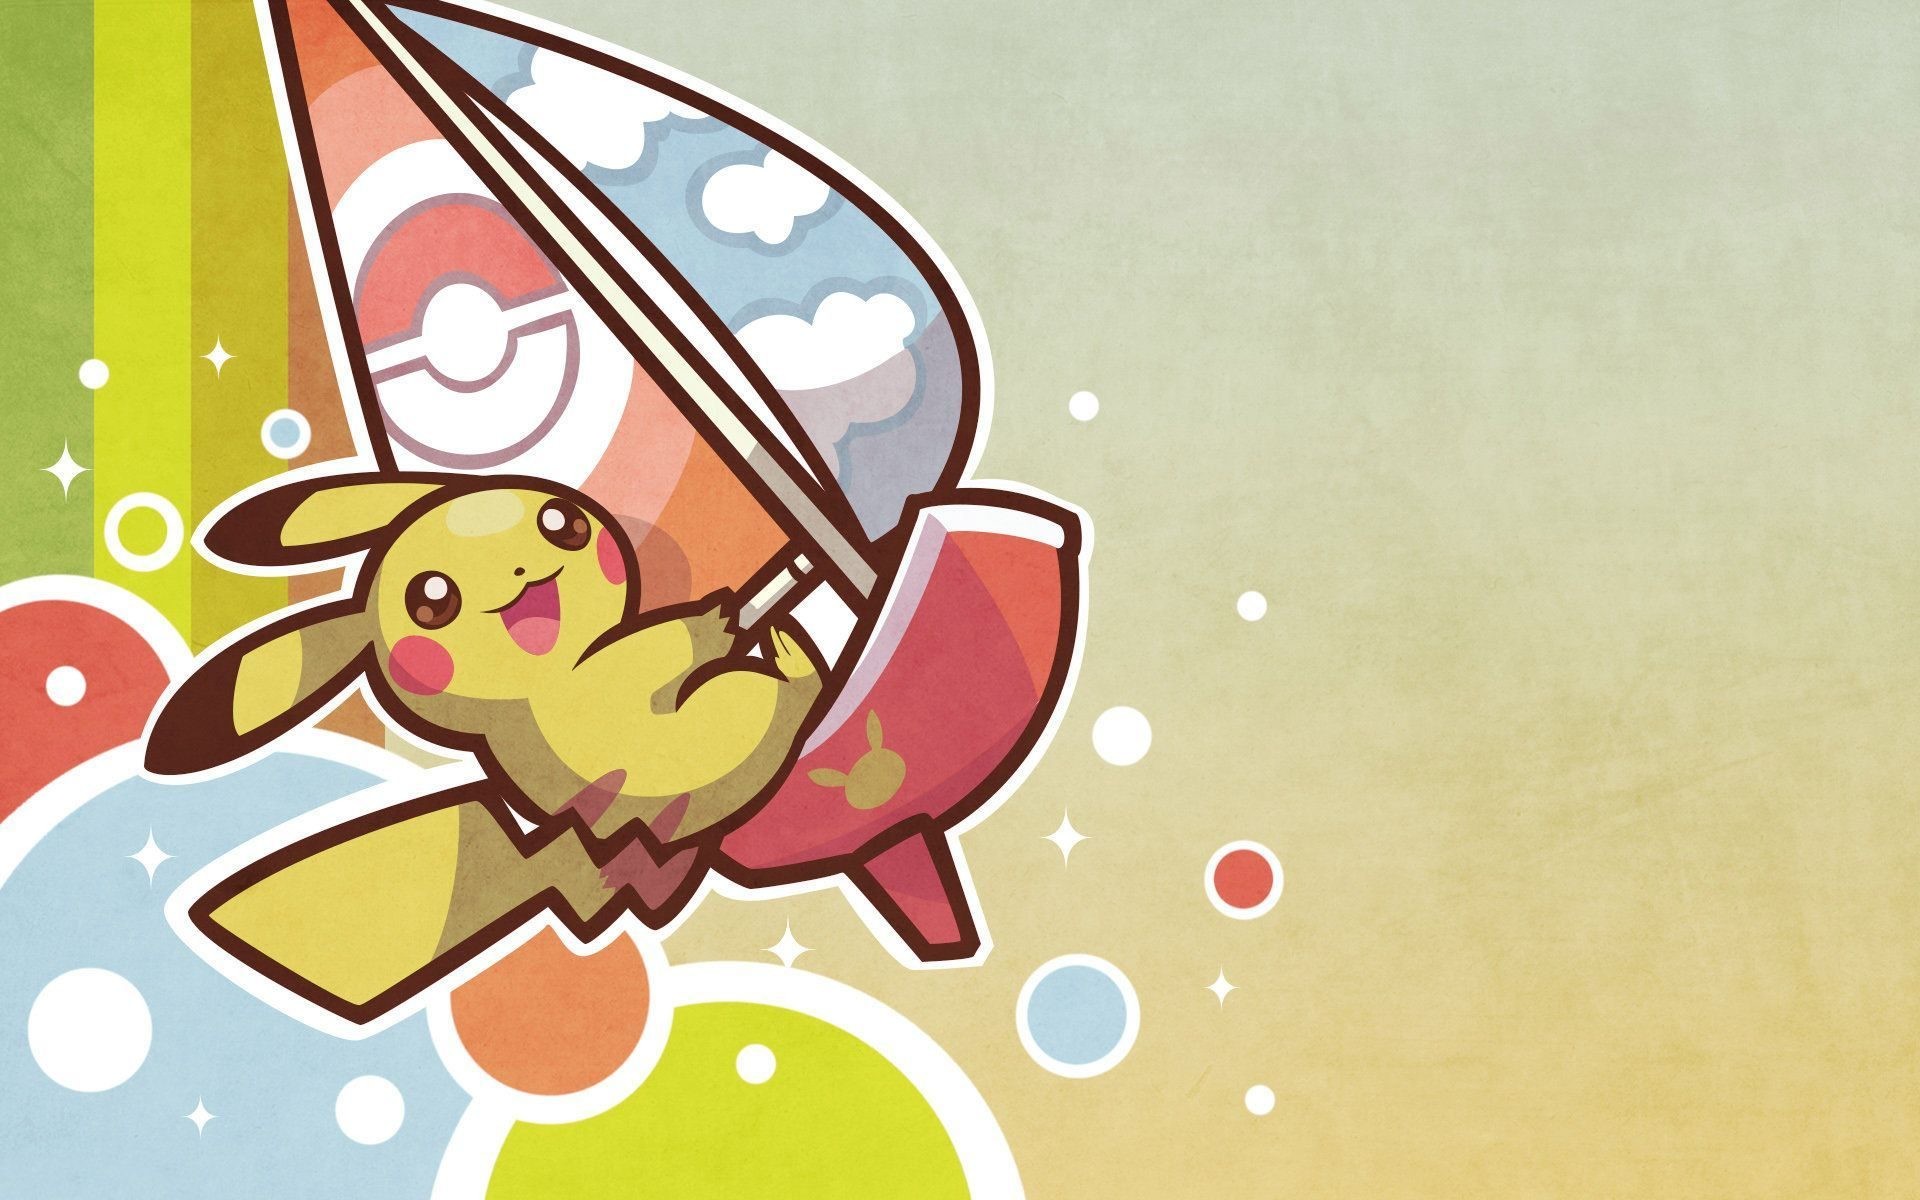 Tải miễn phí 555 Background cute pokemon Vui nhộn, đáng yêu